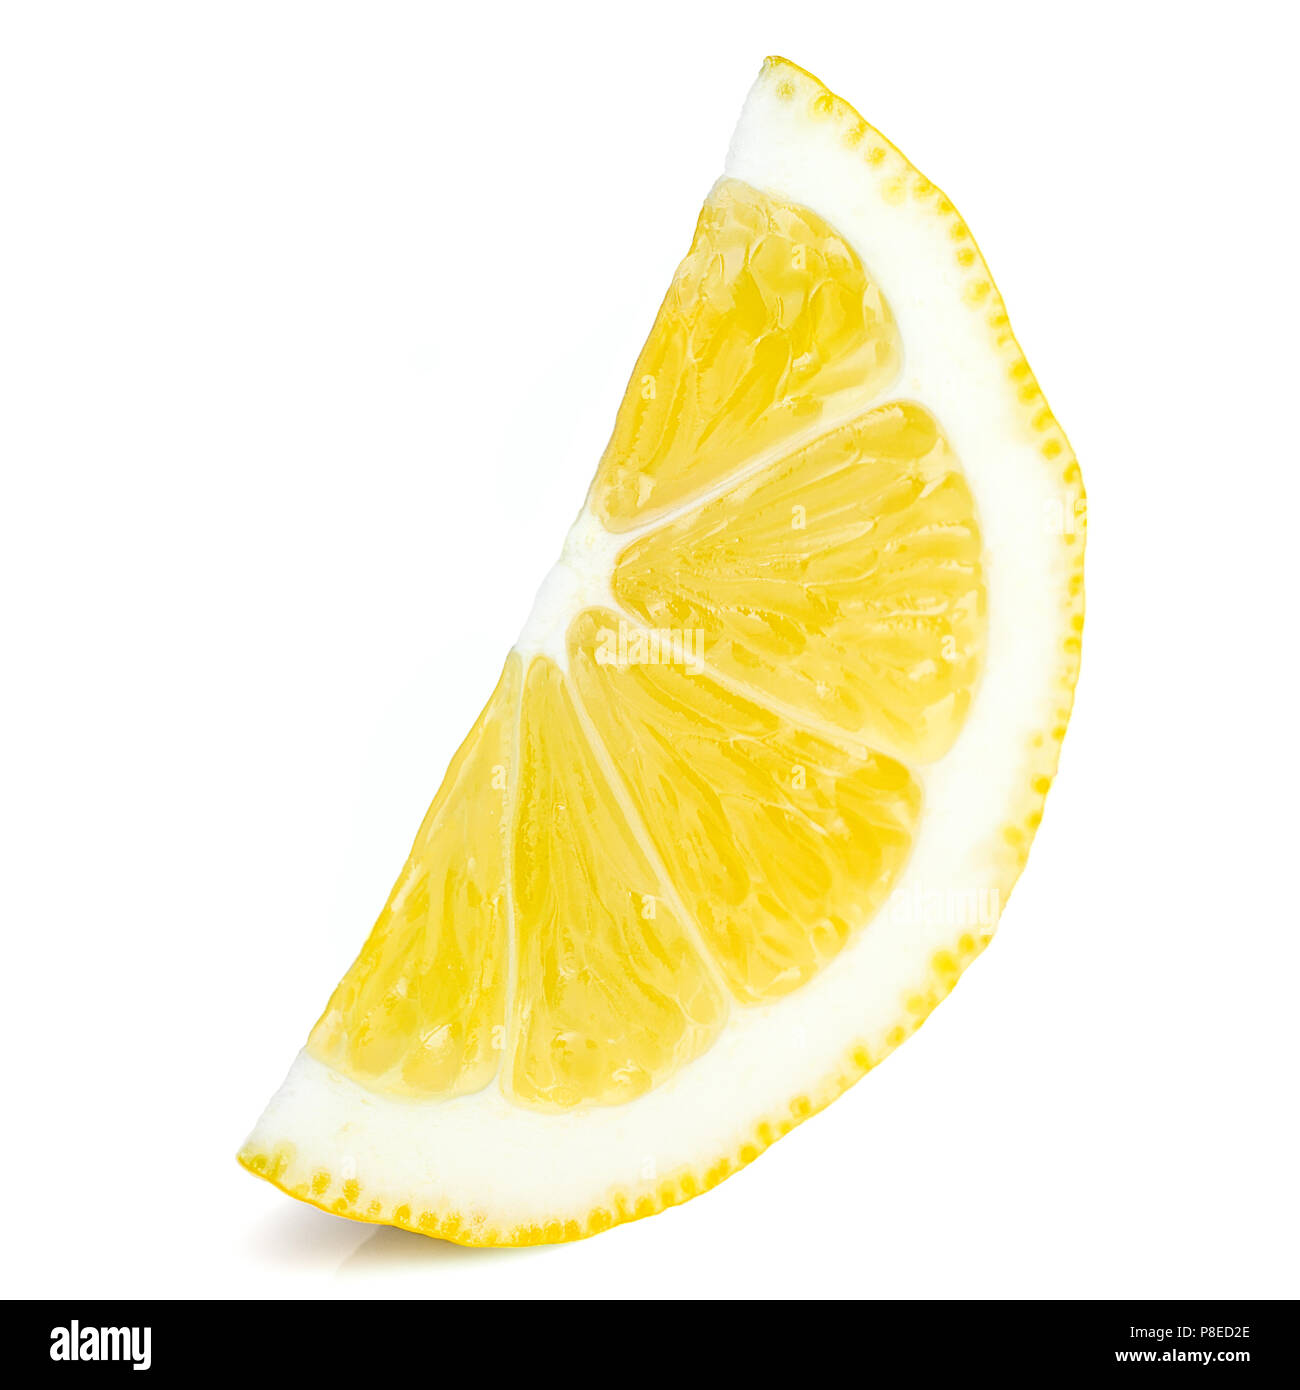 Juicy yellow slice of lemon, white background, isolated Stock Photo